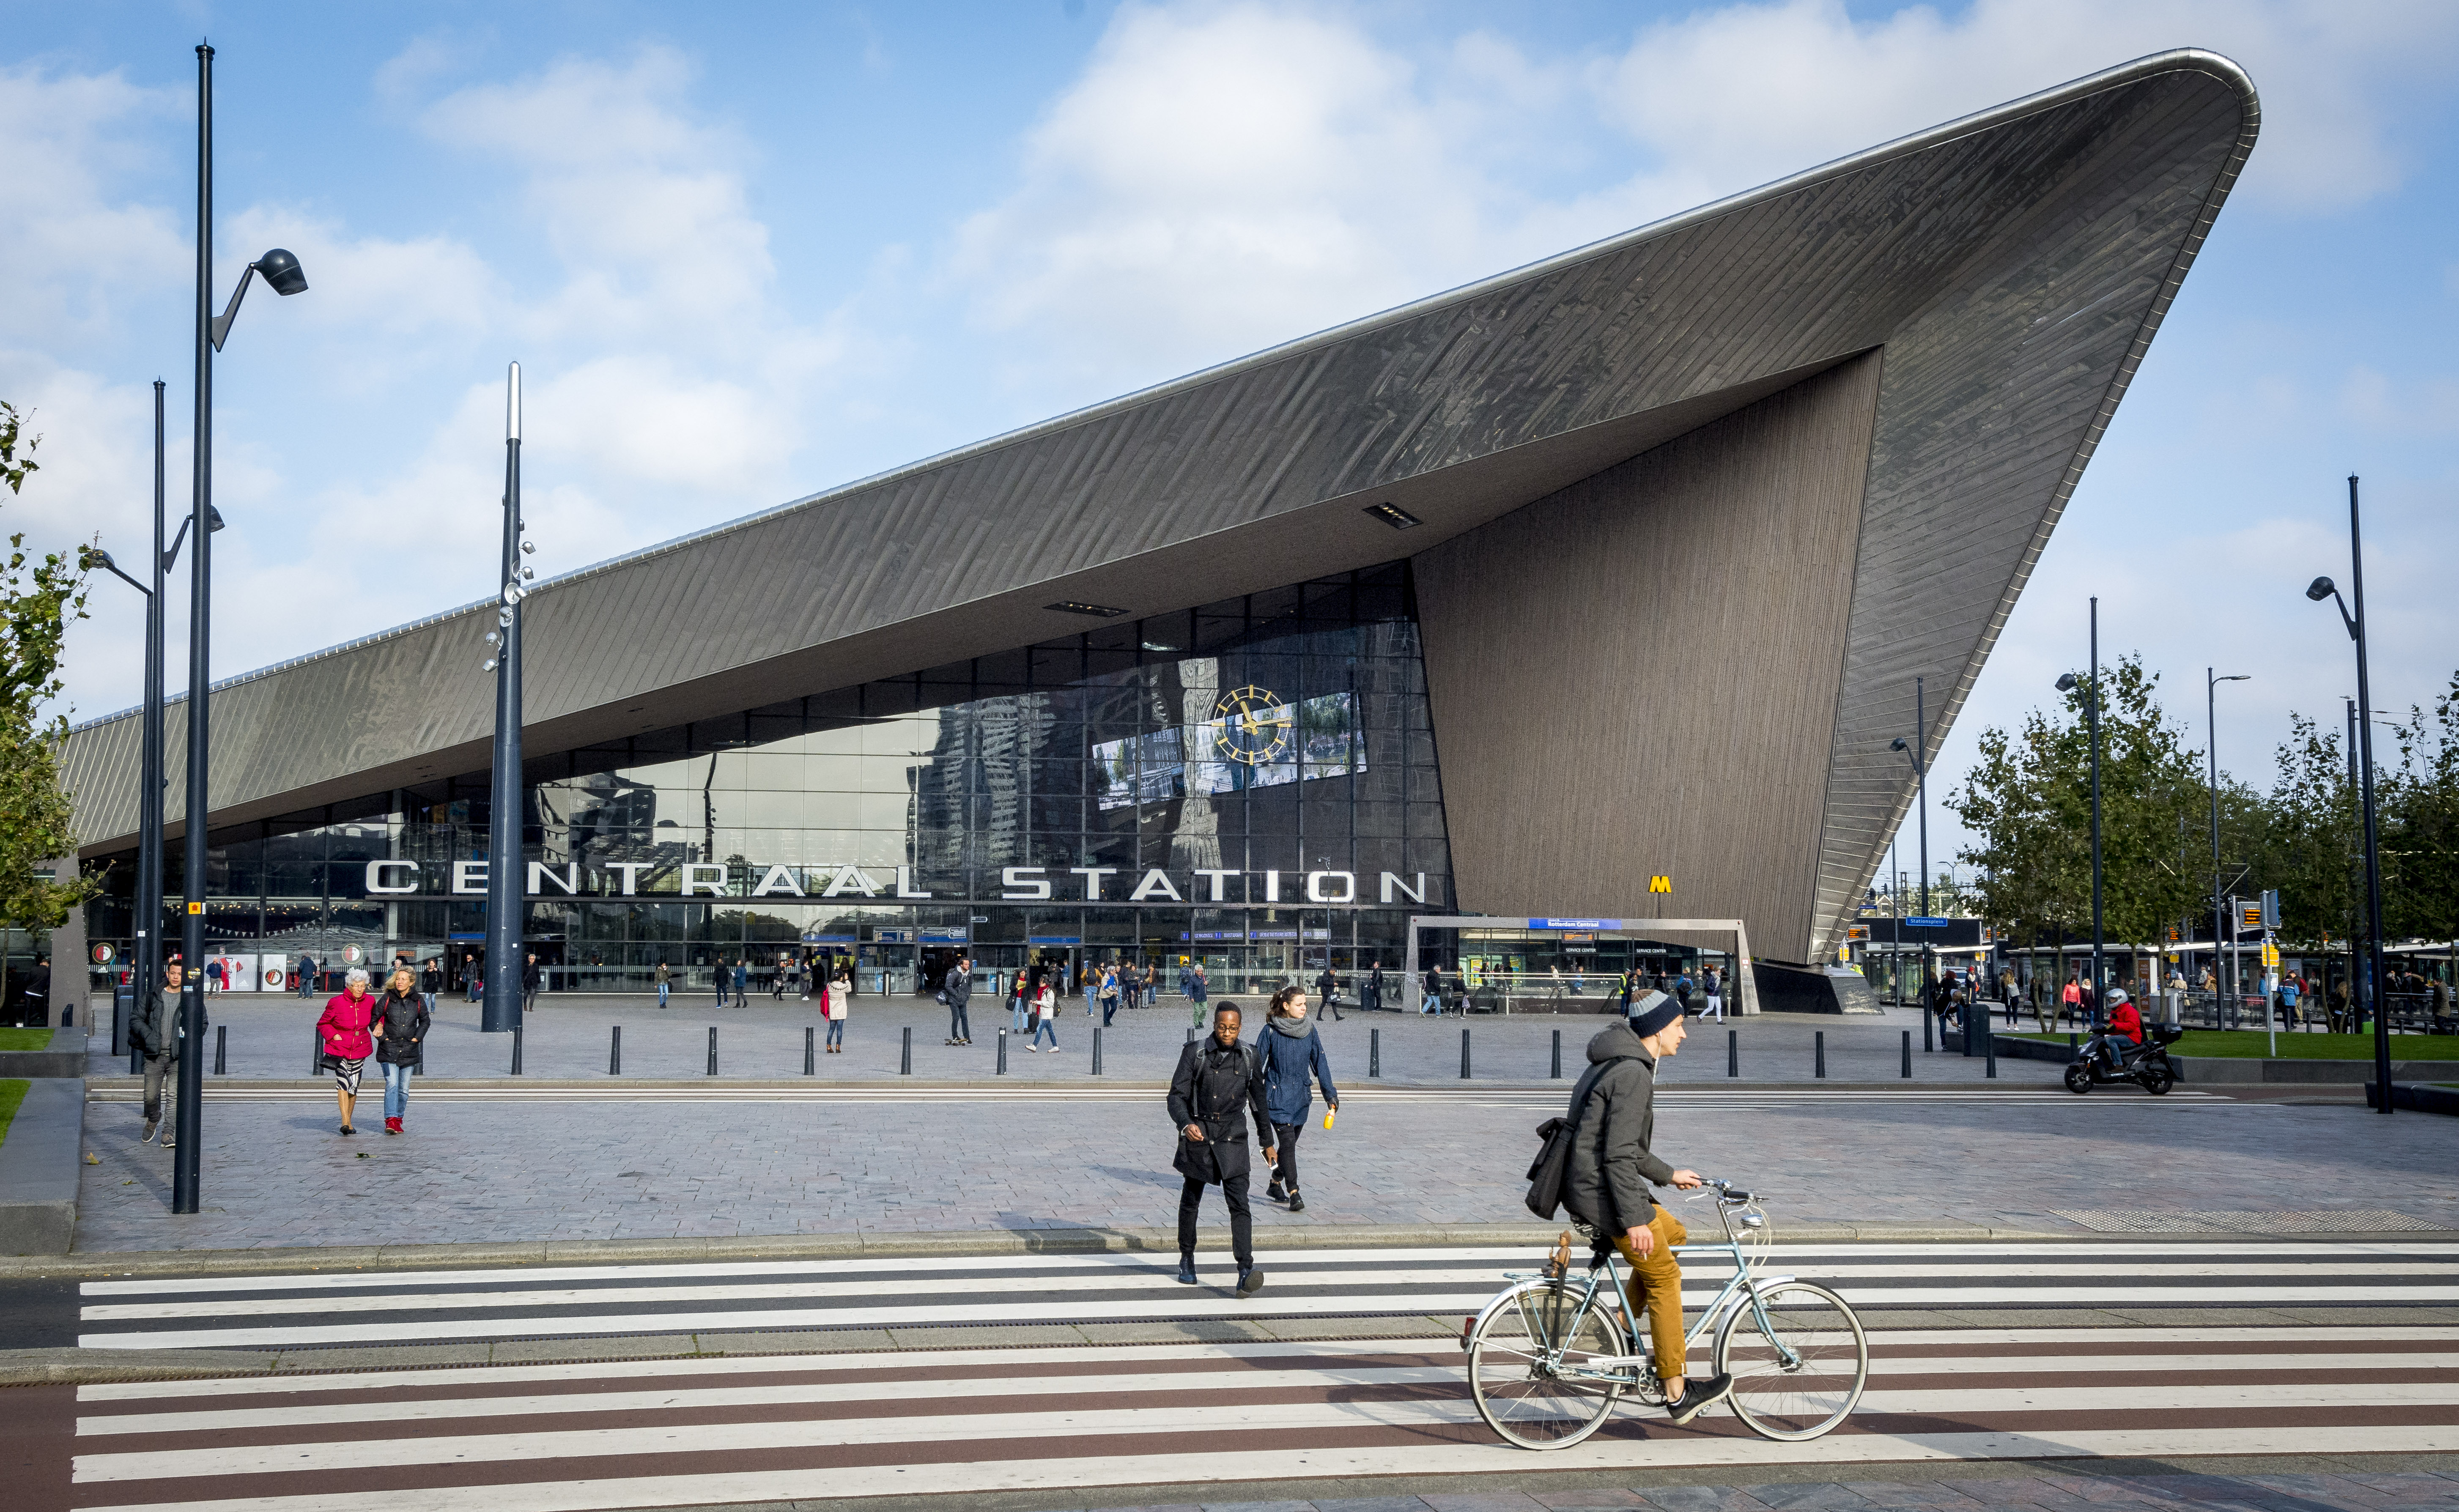 2016-10-14 10:09:19 ROTTERDAM - Het centraal Station van Rotterdam. De stad is uitgeroepen tot de coolste stad van Nederland door The Wall Street Journal. ANP XTRA LEX VAN LIESHOUT